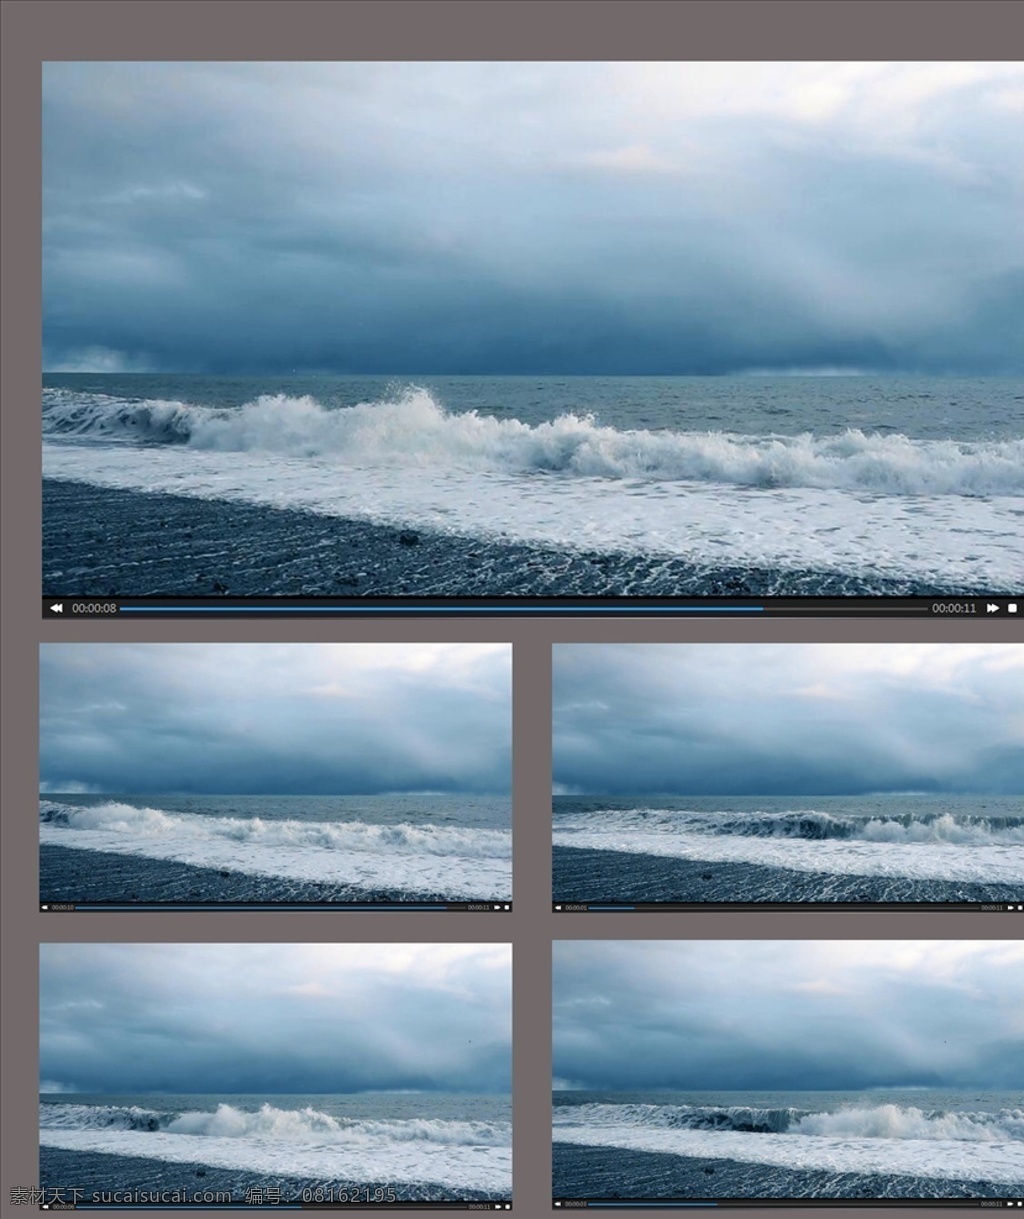 航拍 海浪 起伏 视频 航拍海浪 海浪起伏视频 航拍大海 大海 海浪汹涌 多媒体 实拍视频 自然风光 mp4